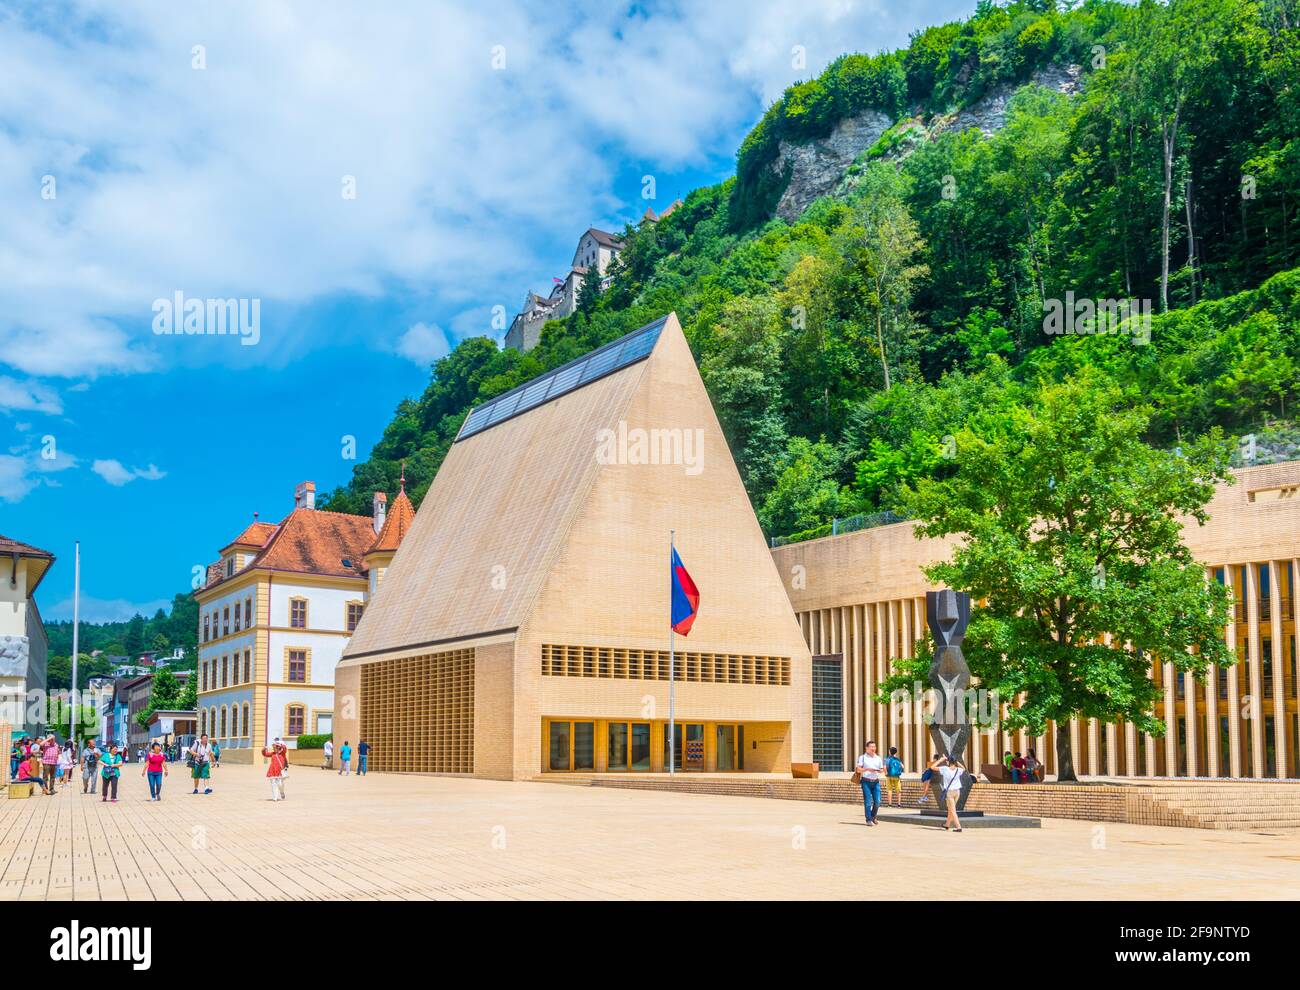 Vue sur le château de guttenberg et le nouveau Parlement de Vaduz, Liechtenstein. Banque D'Images